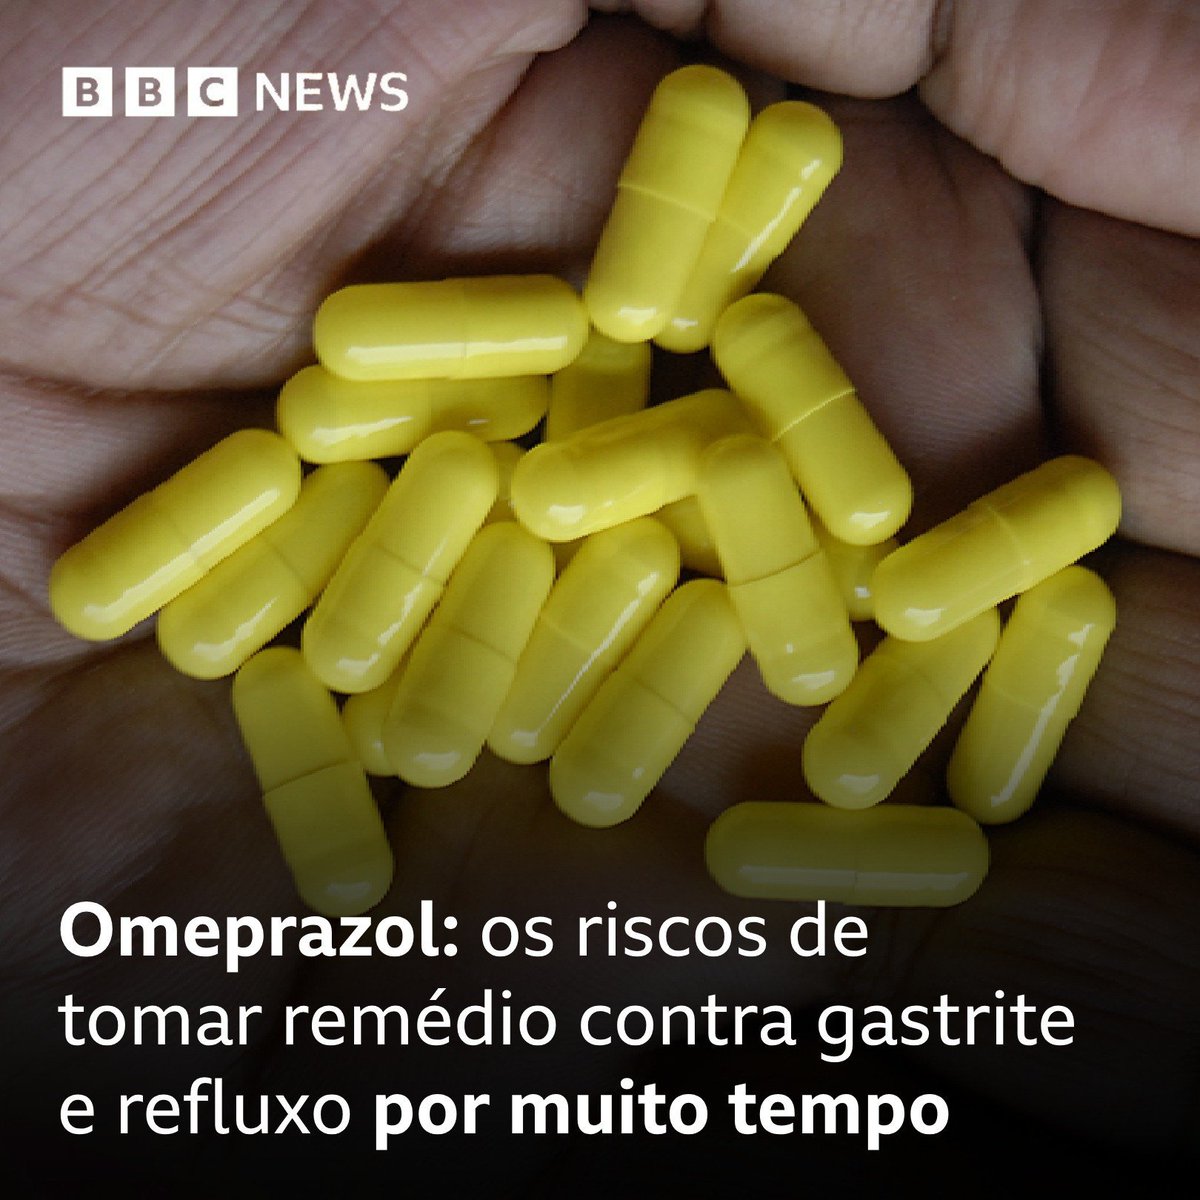 64,9 milhões de unidades de omeprazol foram consumidas no Brasil apenas em 2022, calcula a Anvisa 💊 

Mas o que muita gente não sabe é que esse remédio só deve ser usado por um prazo bem curto, de no máximo dois ou três meses: bbc.in/4aonupJ

#ArquivoBBC